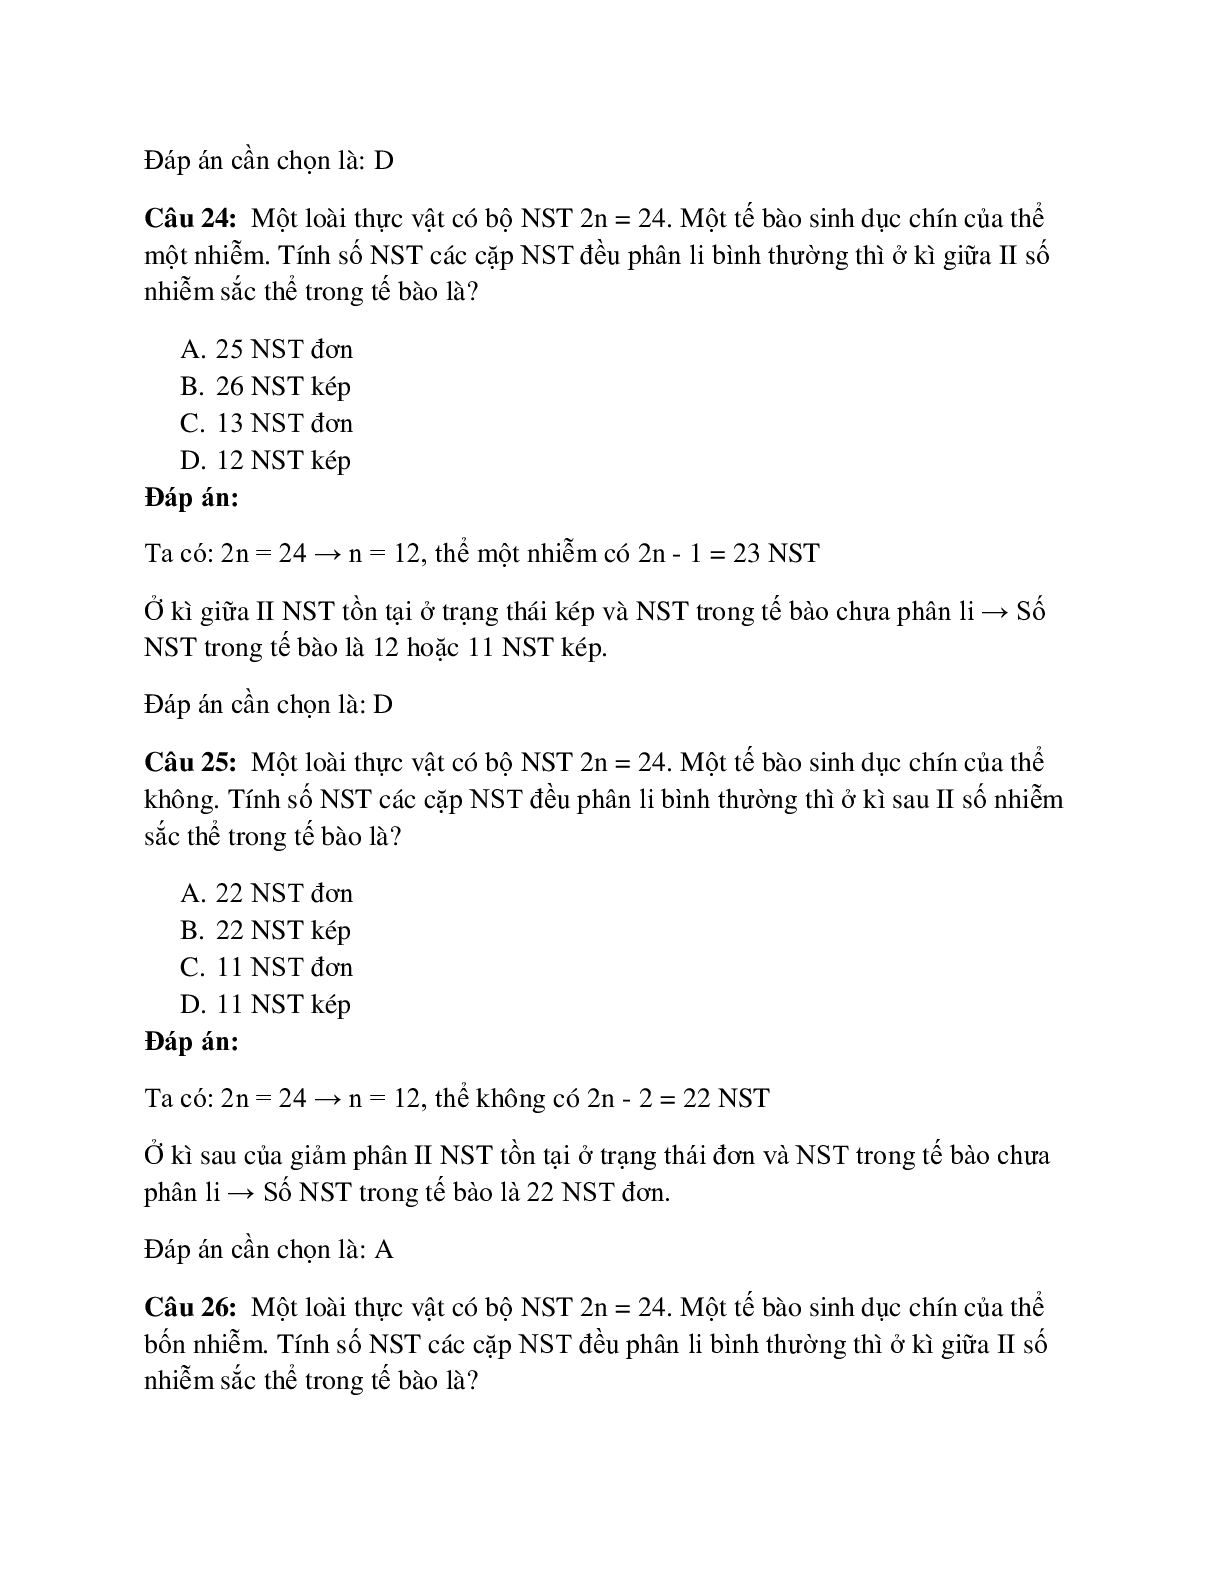 59 câu Trắc nghiệm Sinh học lớp 12 Bài 6 có đáp án 2023: Đột biến số lượng NST (trang 9)